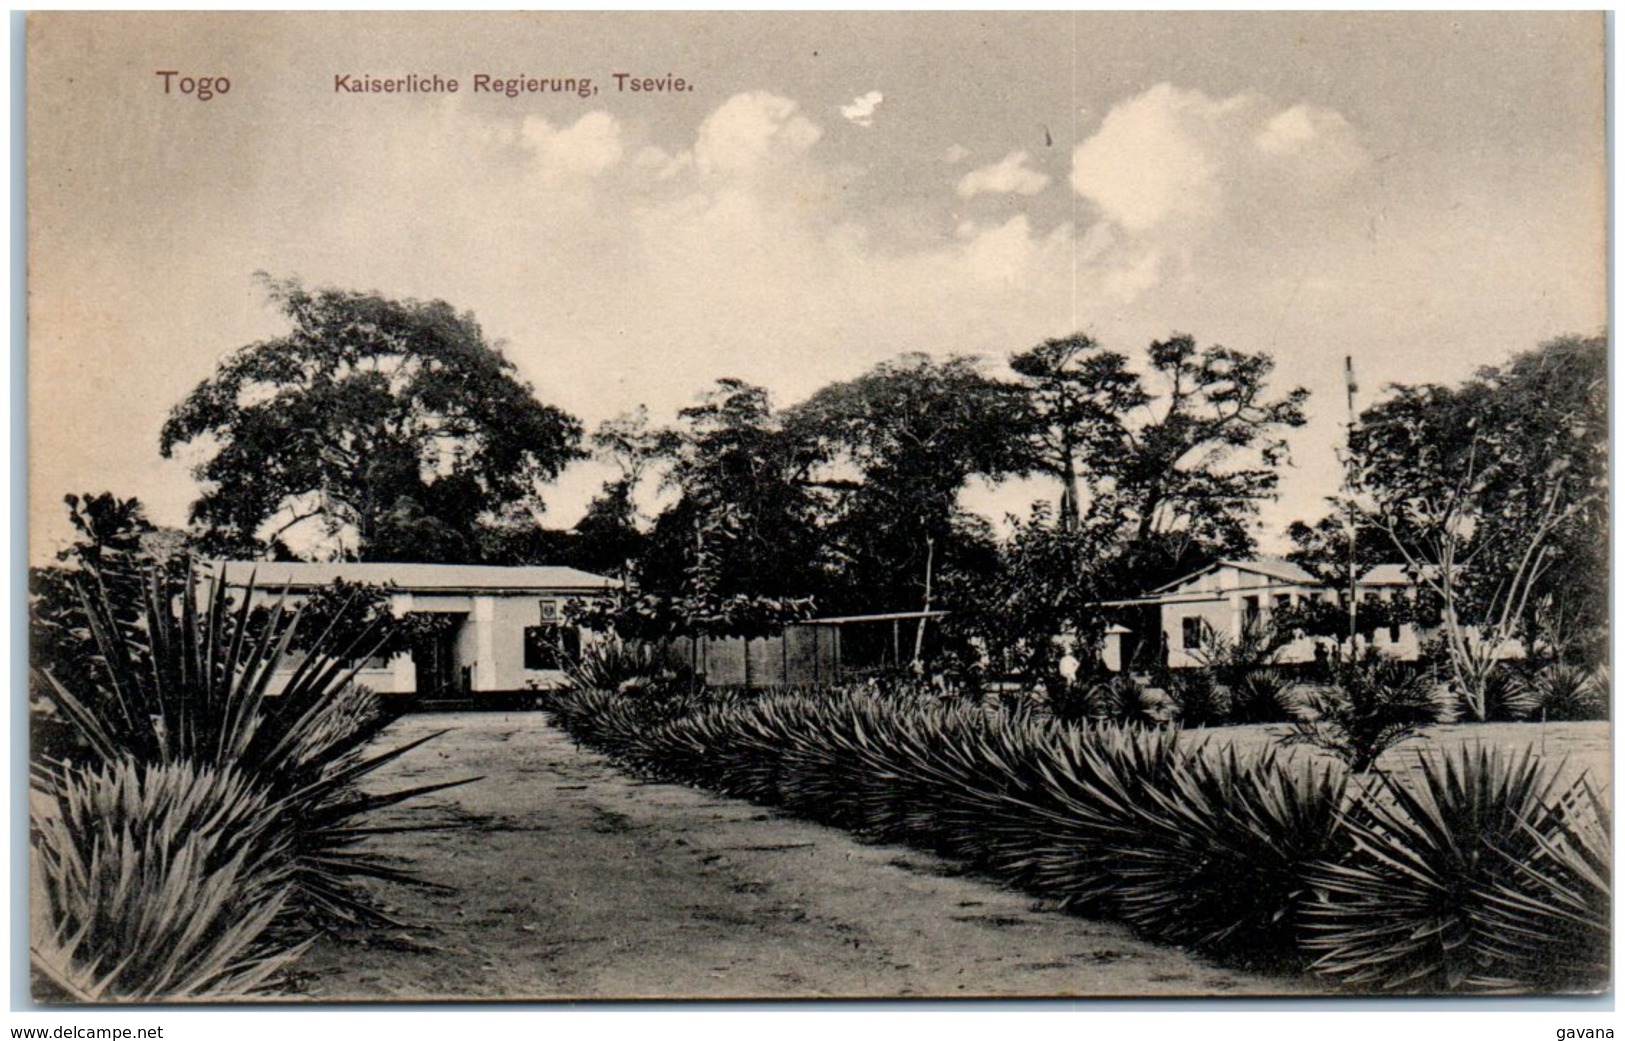 TOGO - Kaiserliche Regierung, Tsevie - Togo